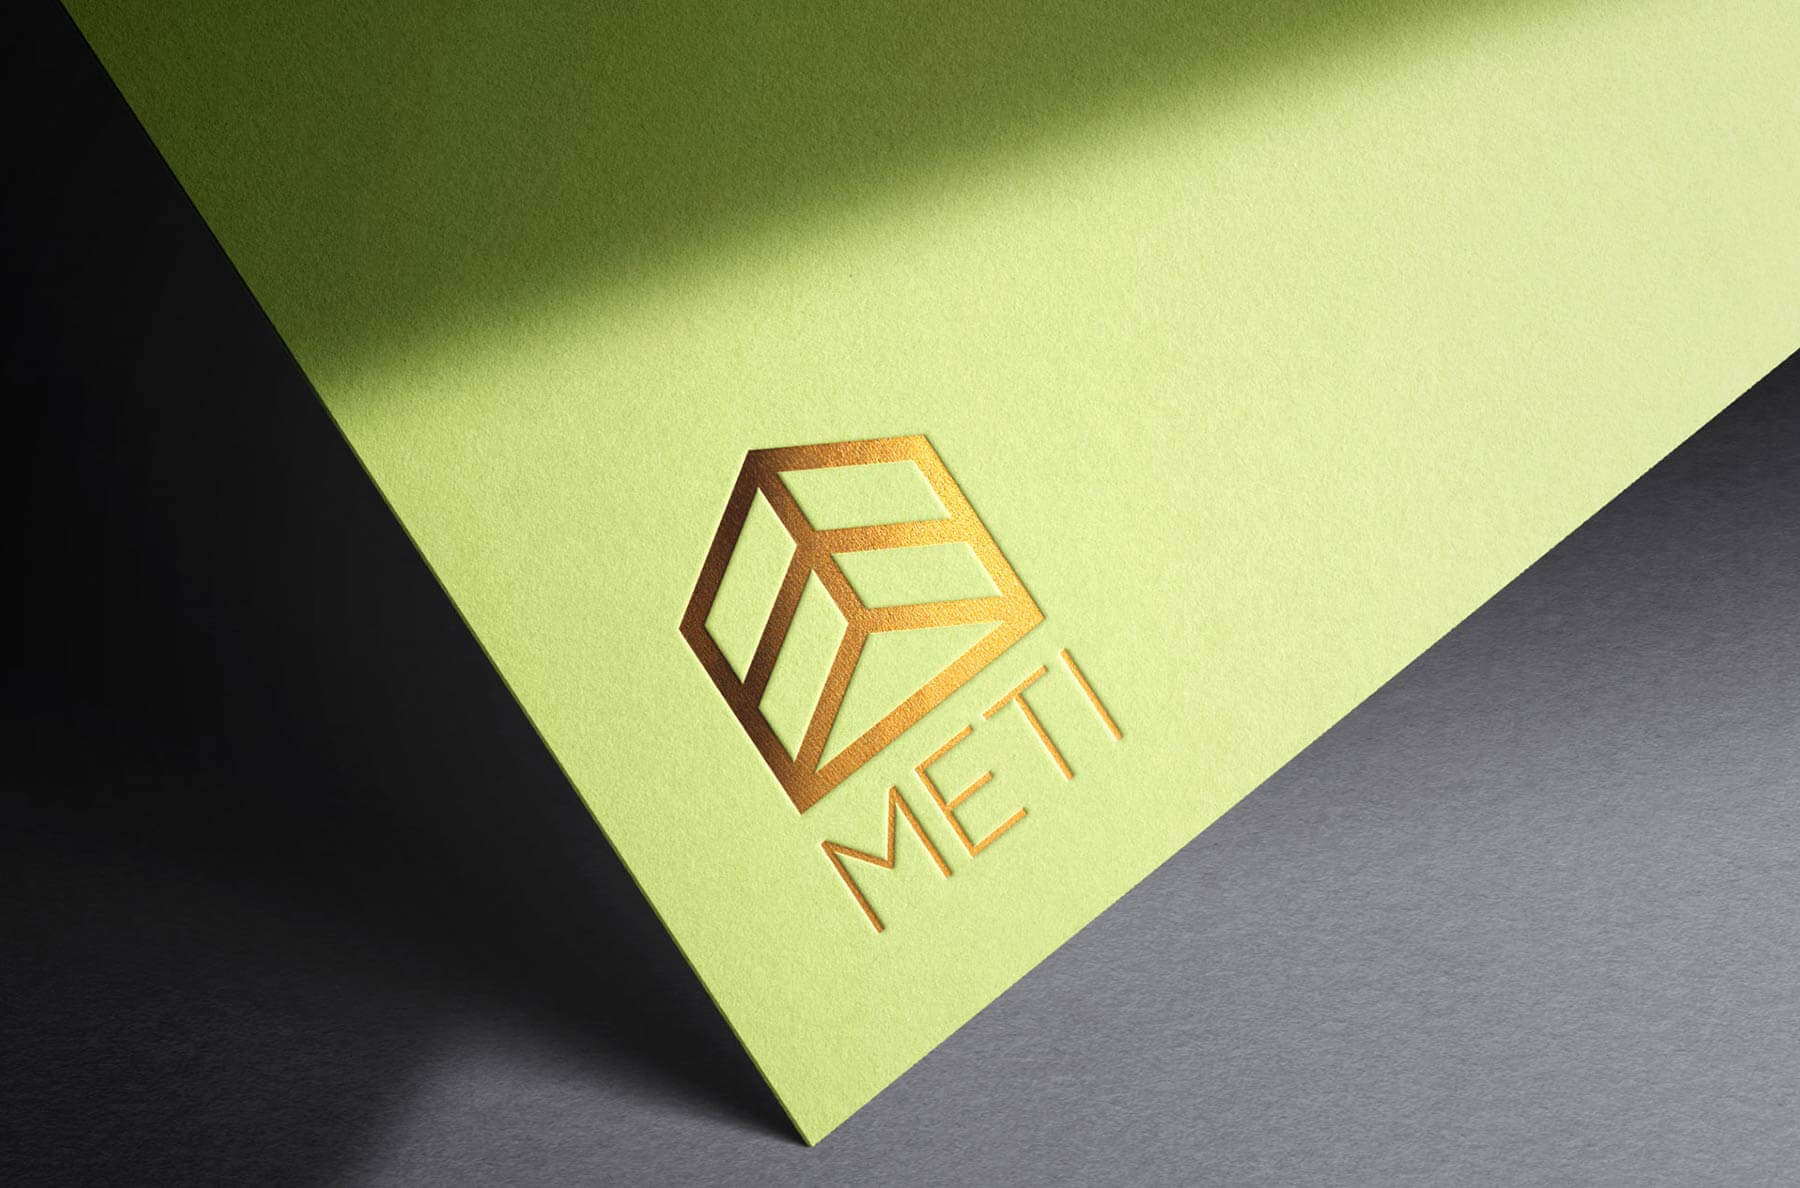 Logo e brand identity di Meti realizzato da SEBA! grafico di Gravellona Toce nel VCO di marchio dorato su cartelletta verde